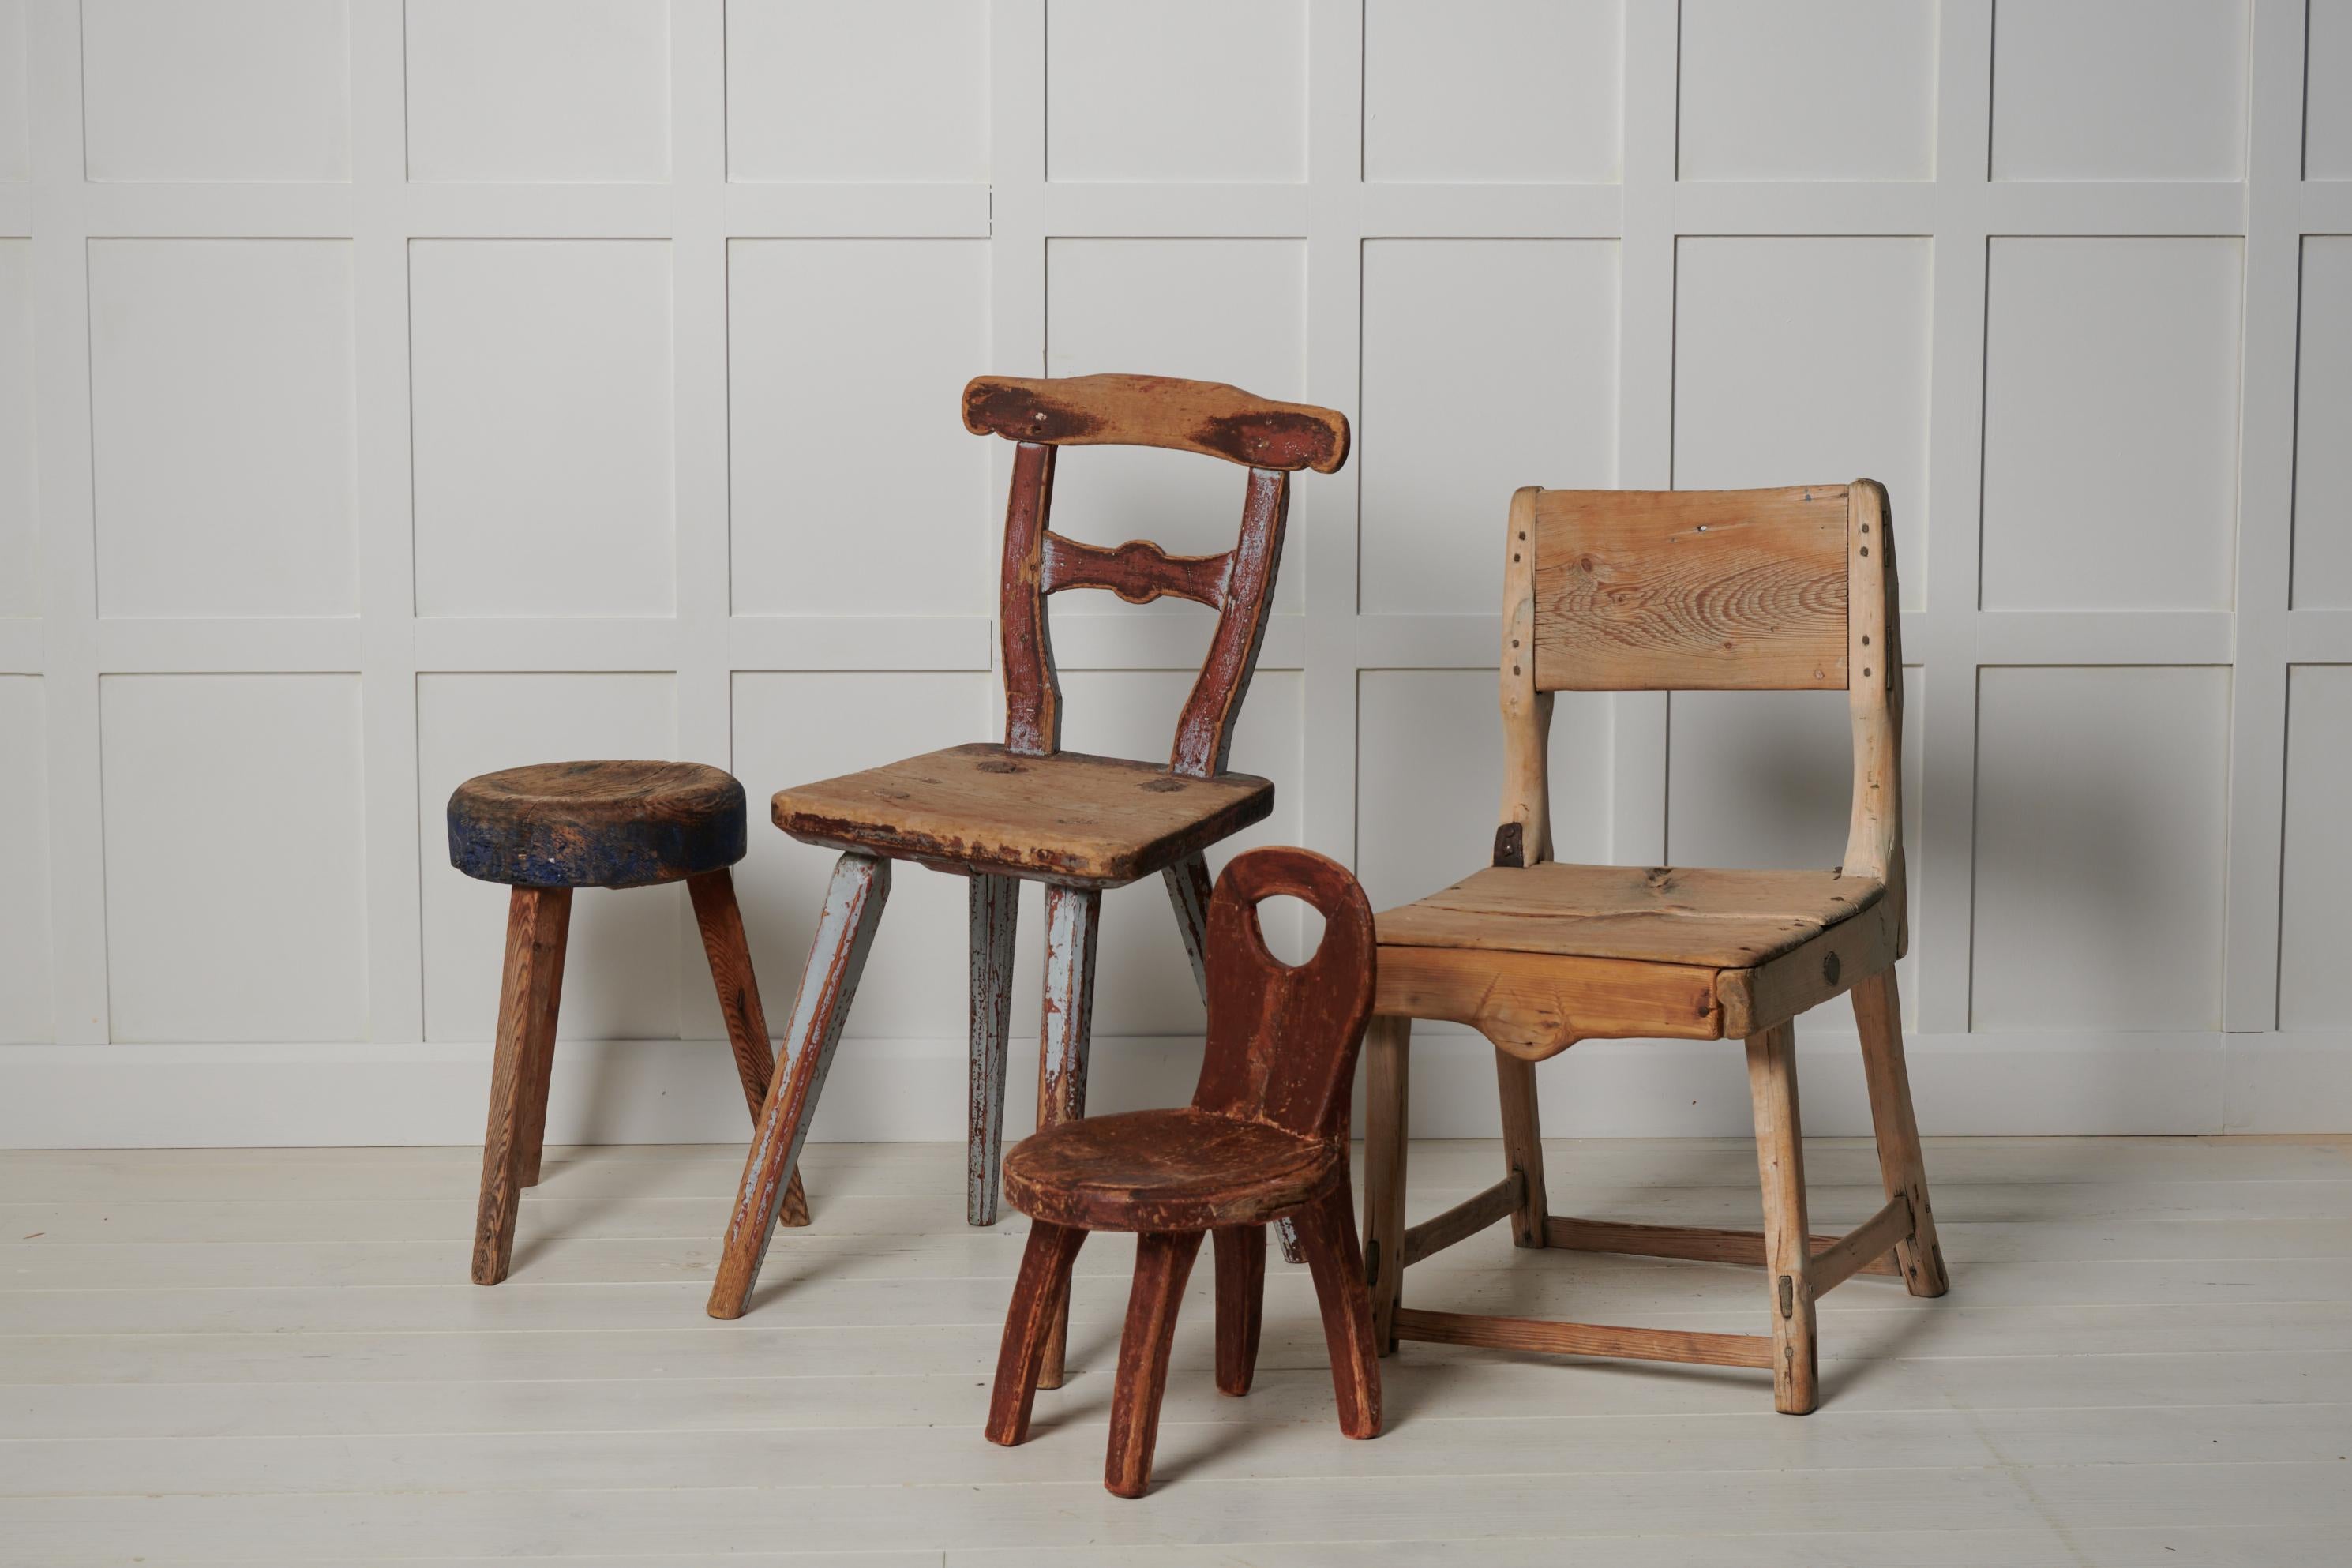 Ungewöhnlicher primitiver Bauernstuhl in Volkskunst aus Nordschweden. Der Stuhl ist ein Einzelstück, das um 1820 bis 1840 aus massivem Kiefernholz handgefertigt wurde. Alte historische Farbe, die durch den Gebrauch in Mitleidenschaft gezogen wurde.